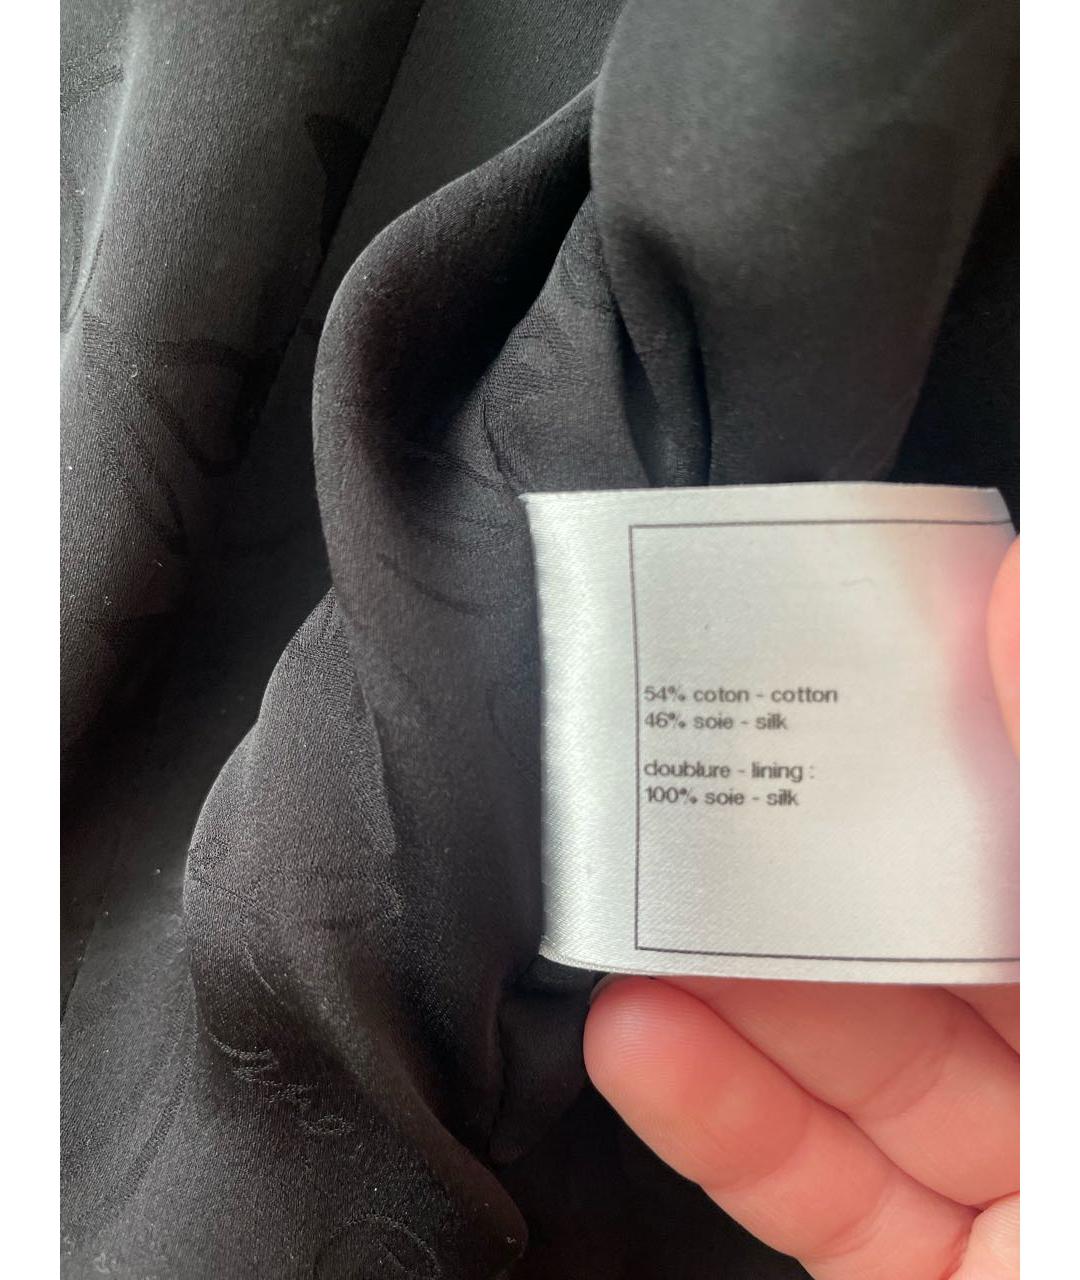 CHANEL PRE-OWNED Черный хлопковый жакет/пиджак, фото 7